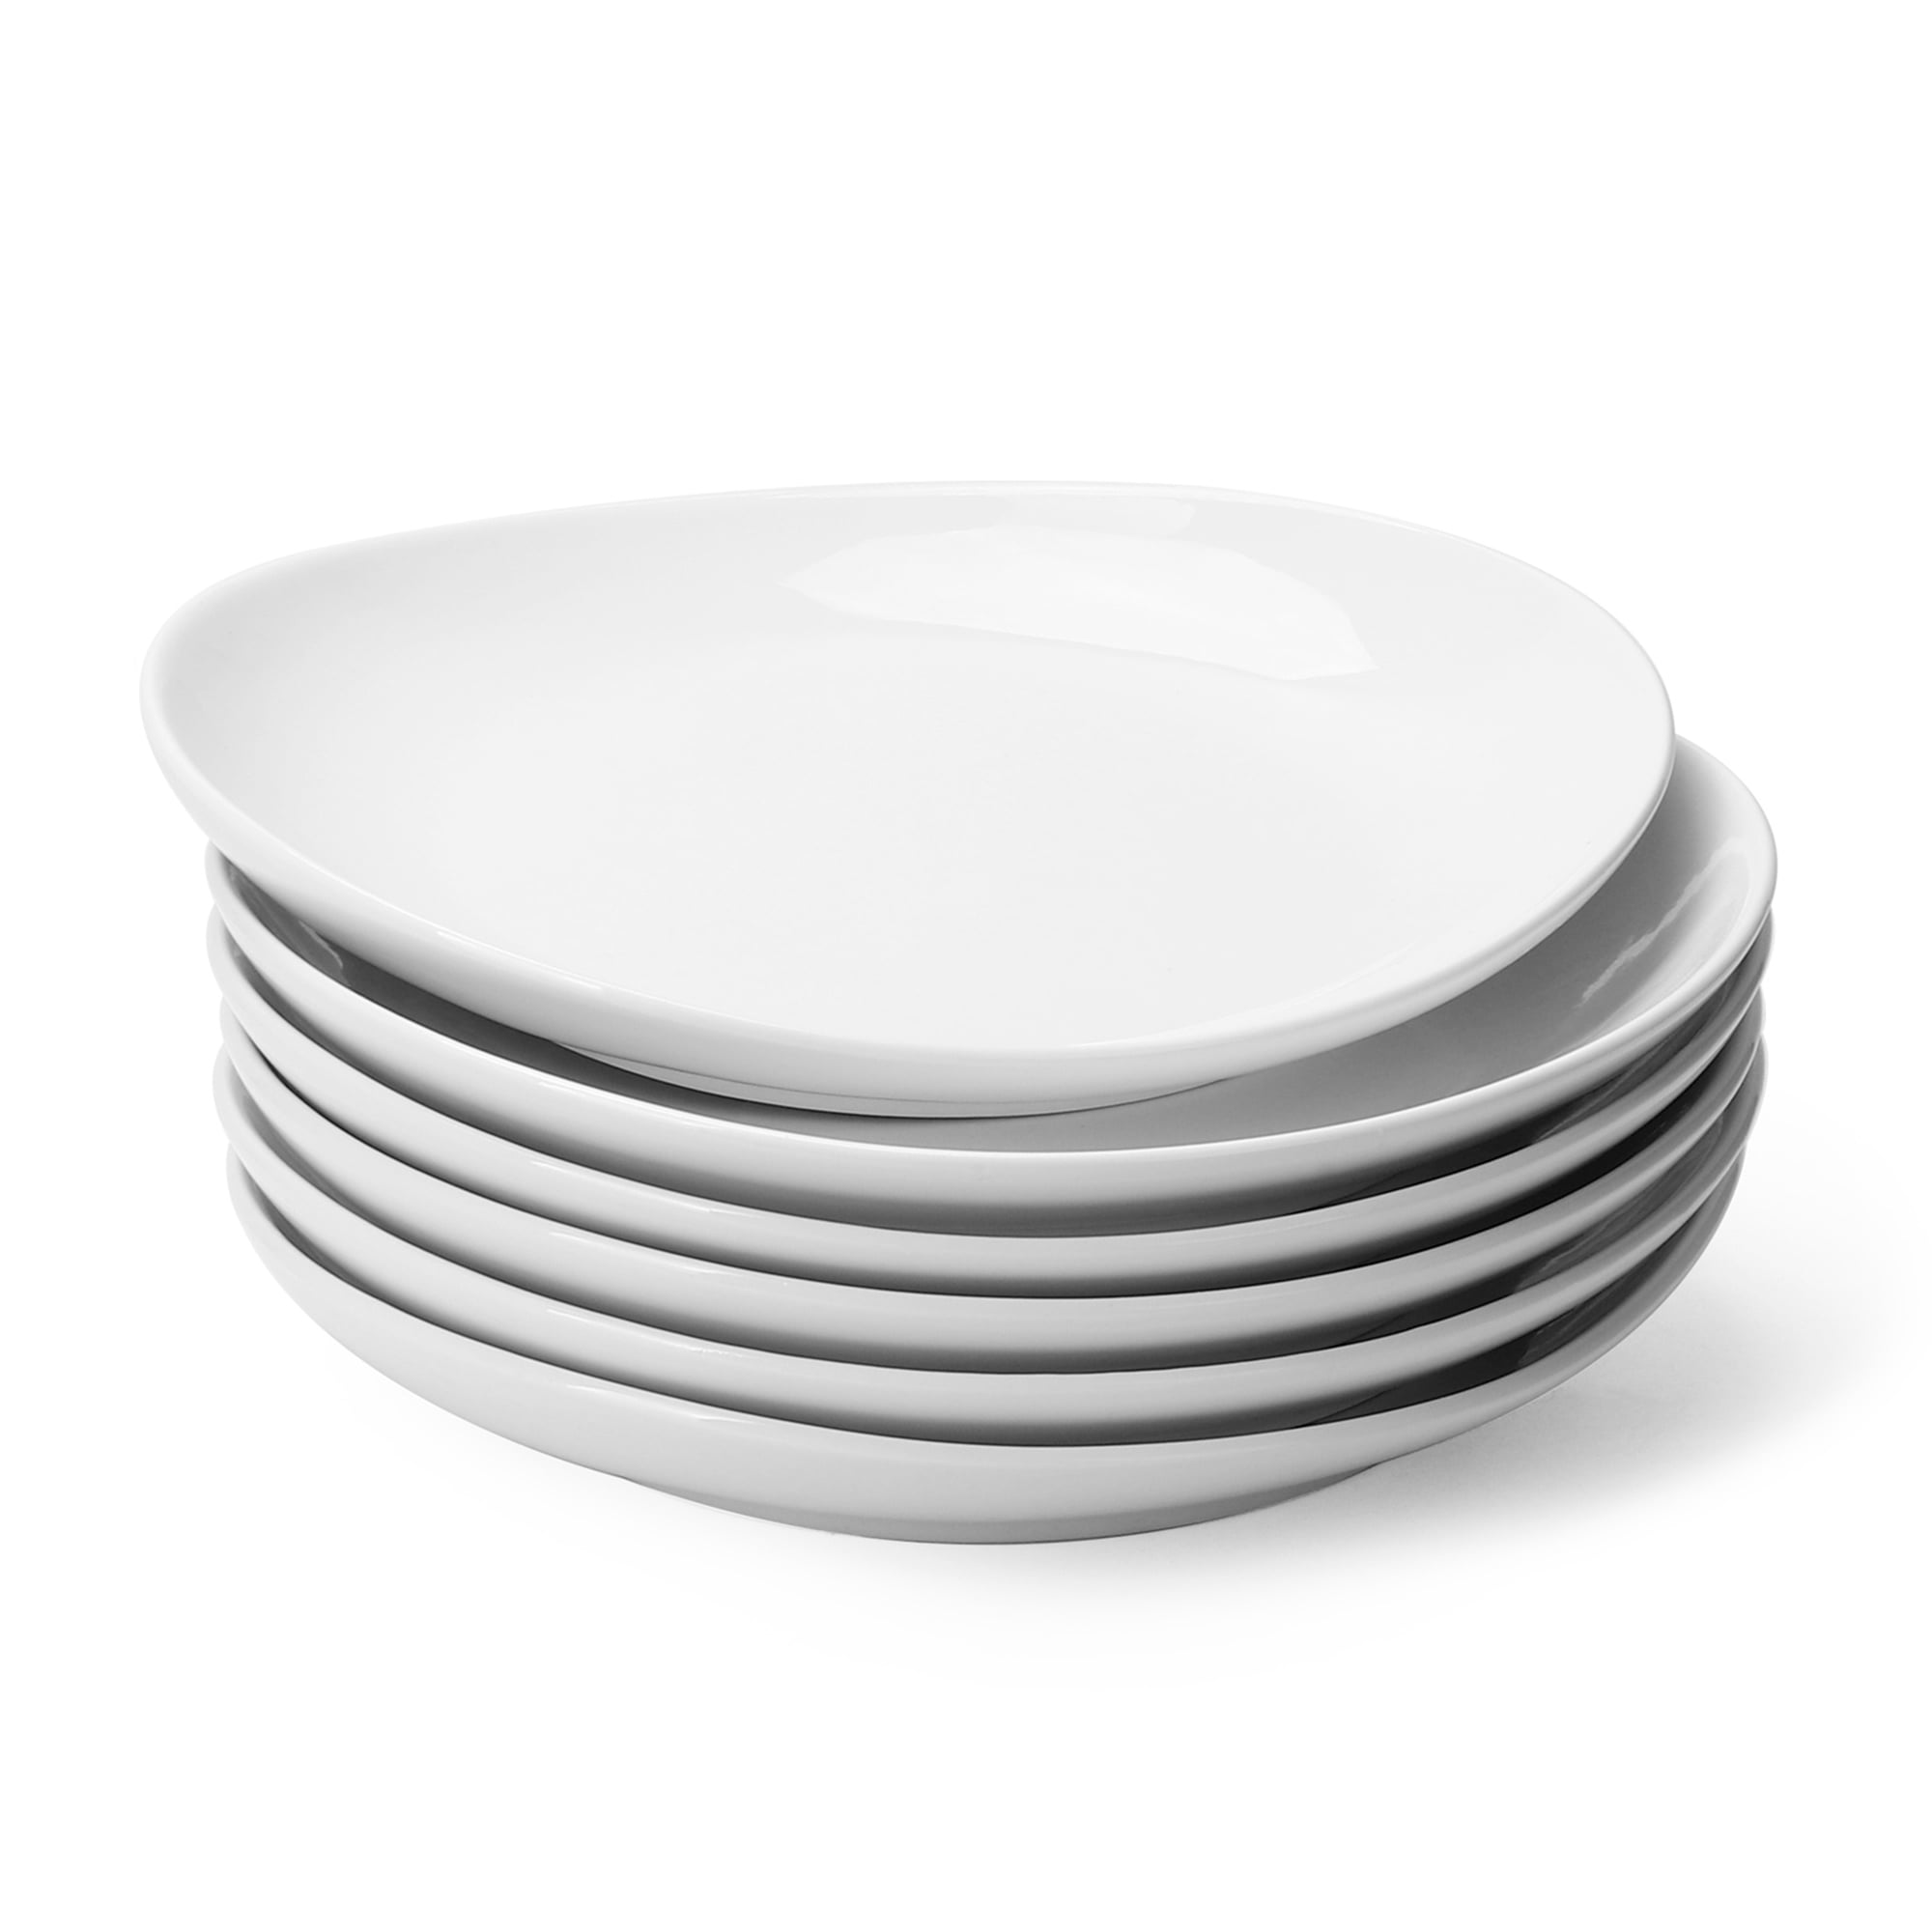 Salad Plates Dessert Appetizer Plates Set of 6 Porcelain Lunch Plates Dishwasher and Microwave Safe Black Plate Set 8 Inch